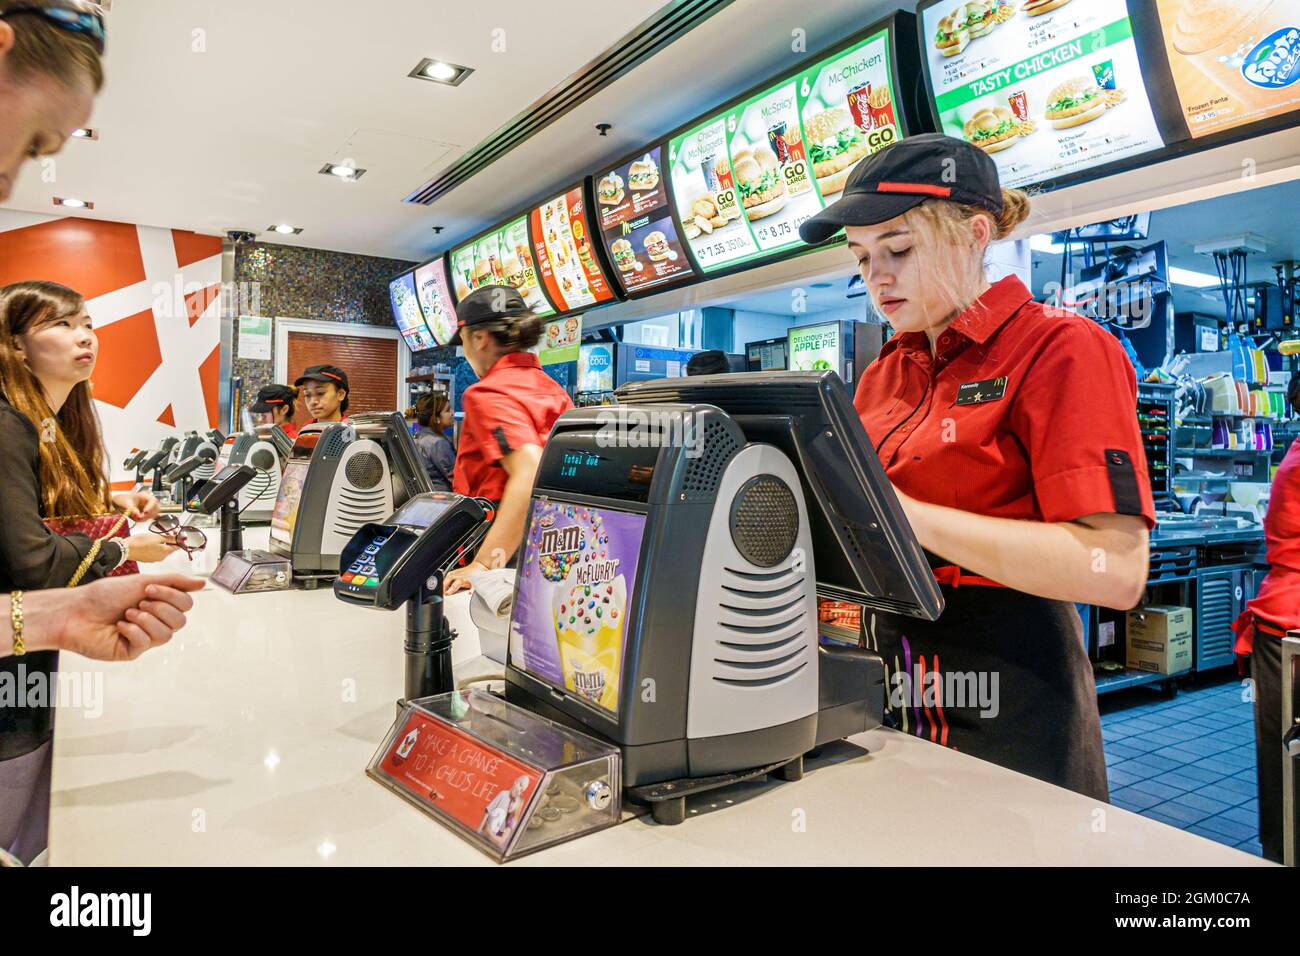 Sydney Australie, Circular Quay, McDonald's restauration rapide, comptoir client commandant femme travailleur adolescent fille employé s'inscrire Banque D'Images